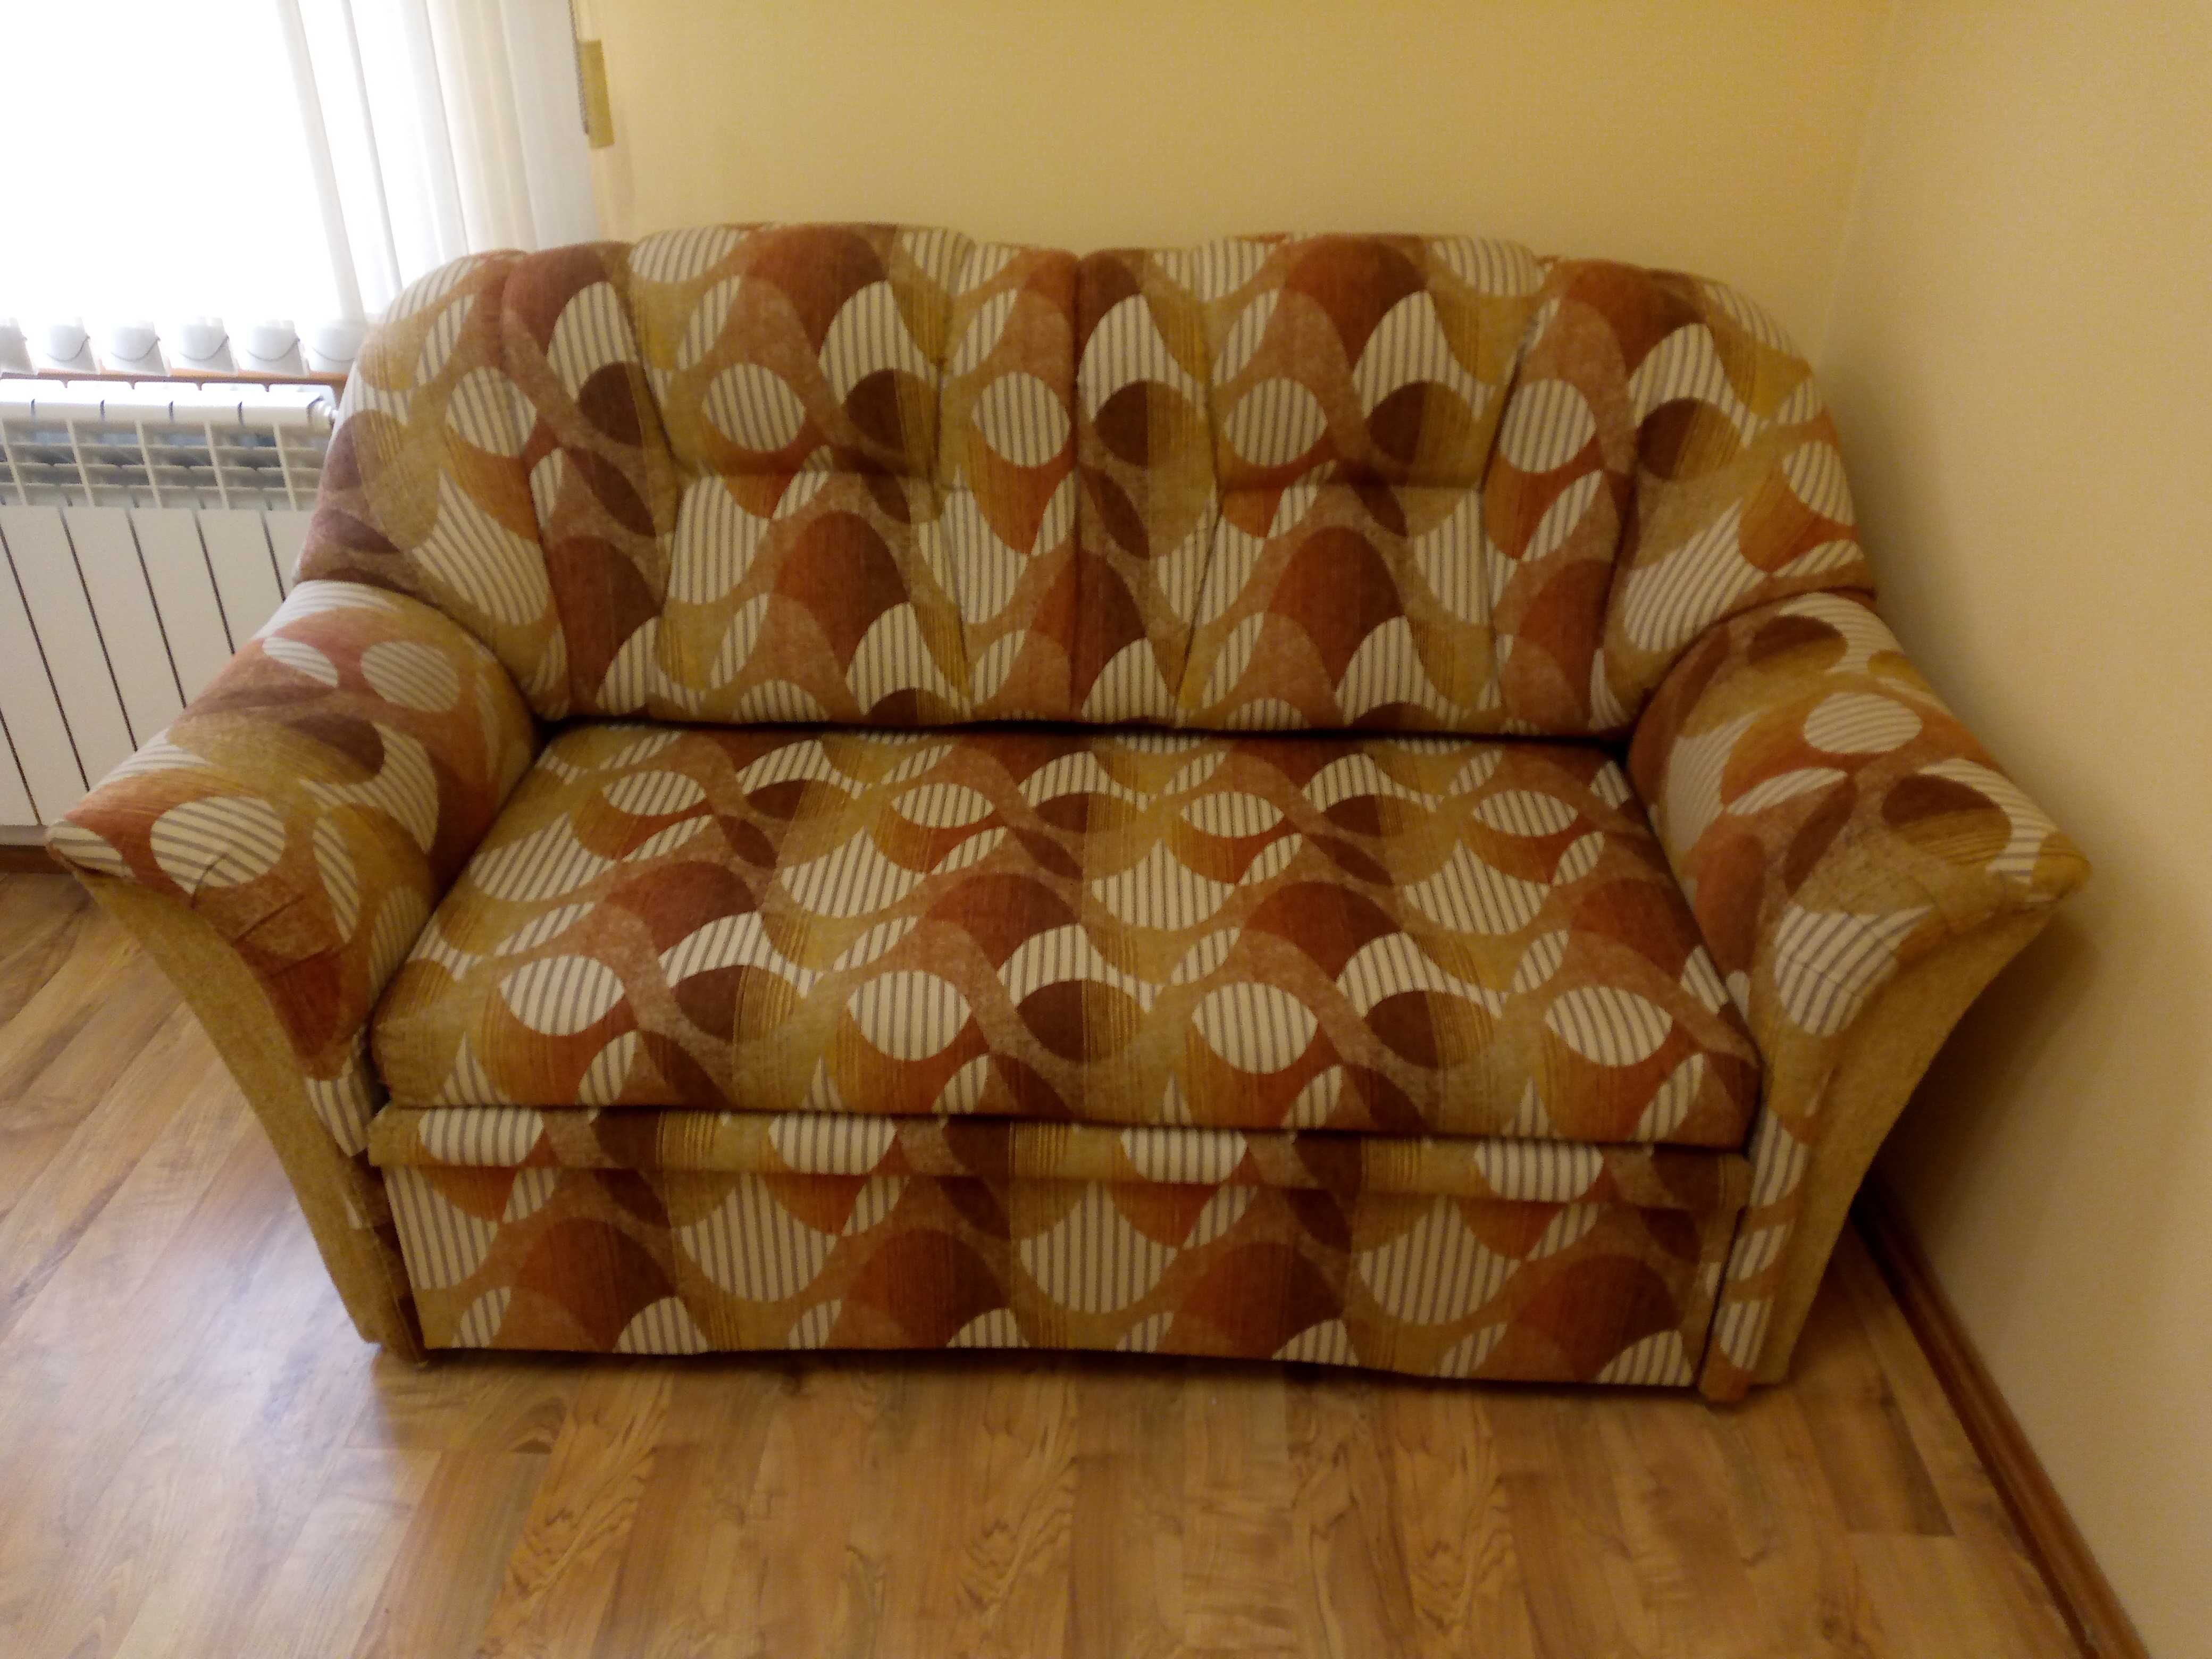 Удобный прочный 2 местный диван 167х88см как новый, раскладной